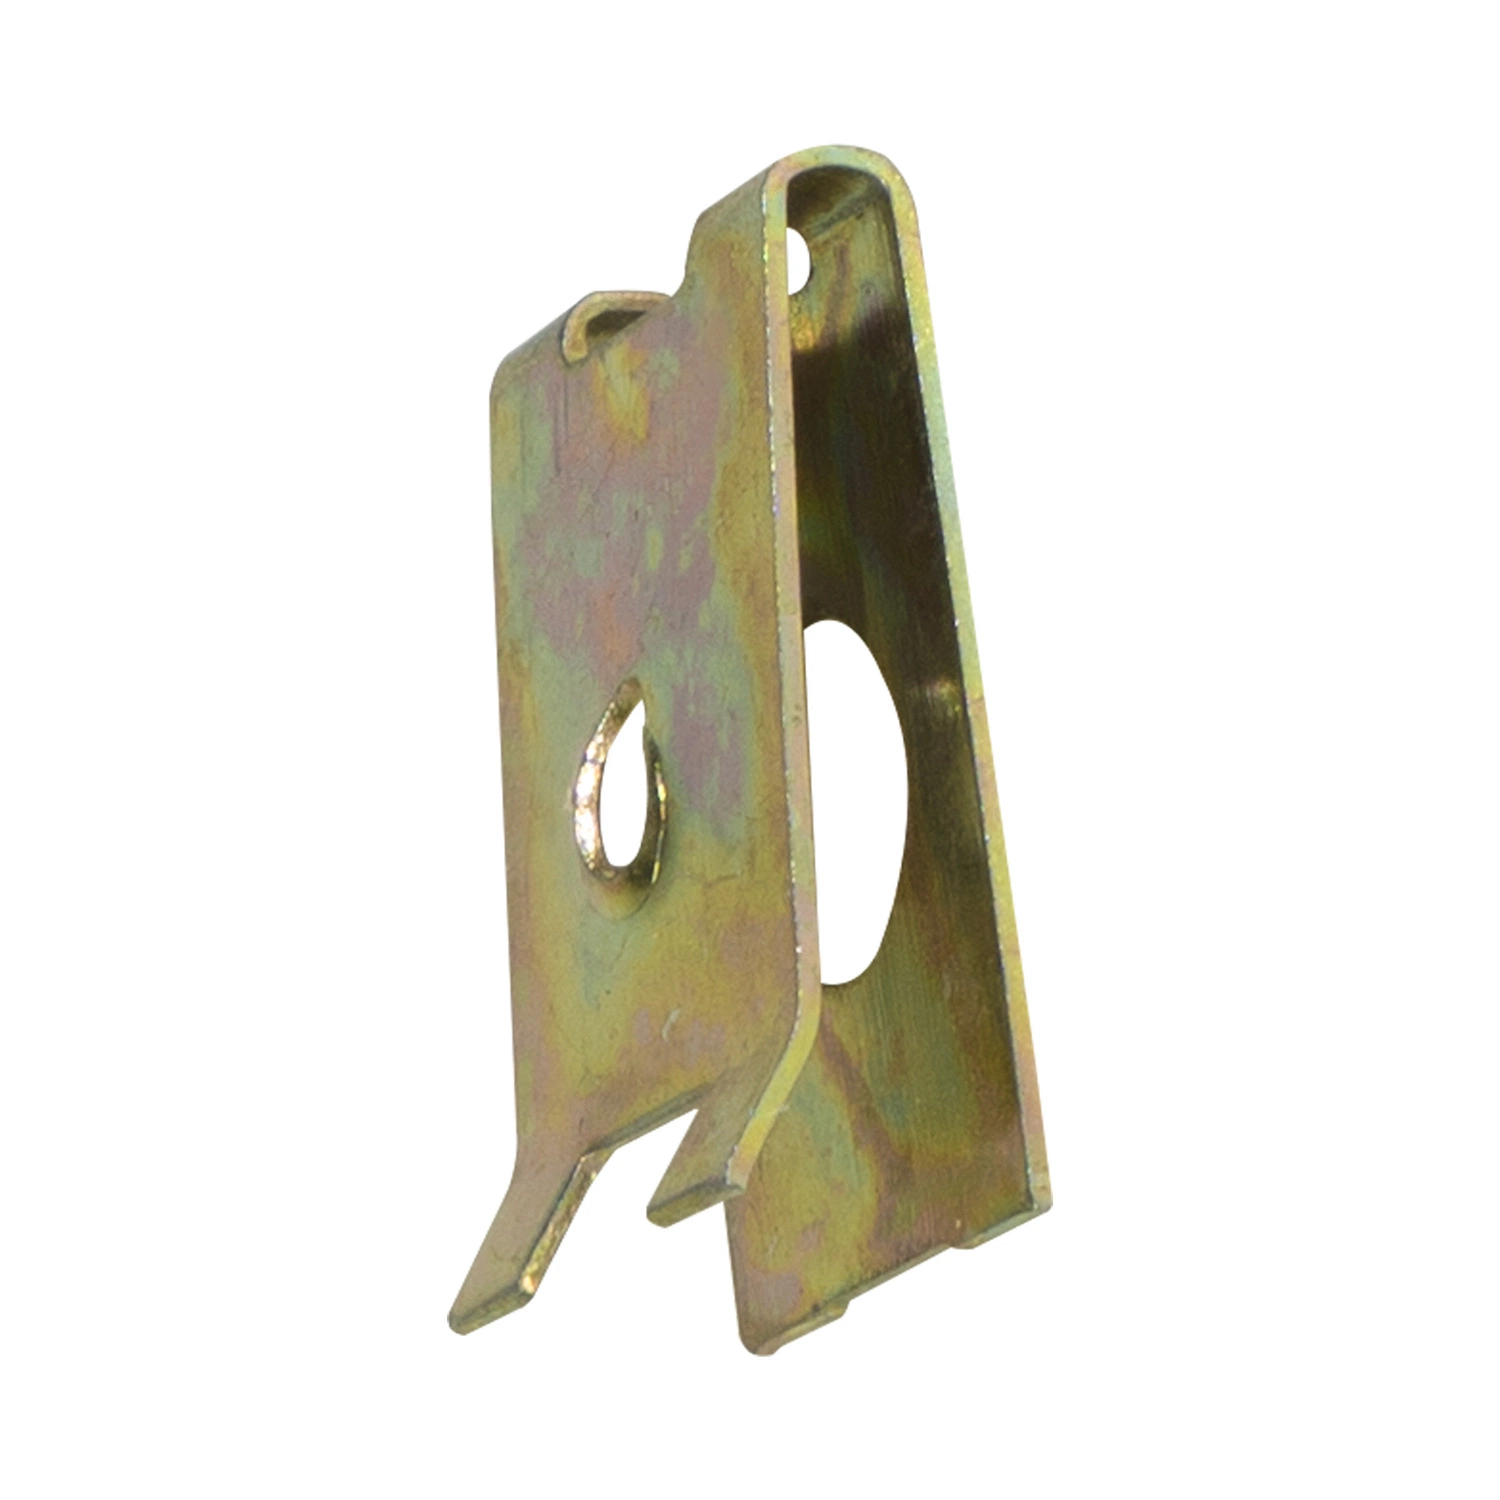 Ausgezeichnete Qualität CNC-Blech Stanzteile für Handy Teile Pulverbeschichtungsanlage für Metallhalterung